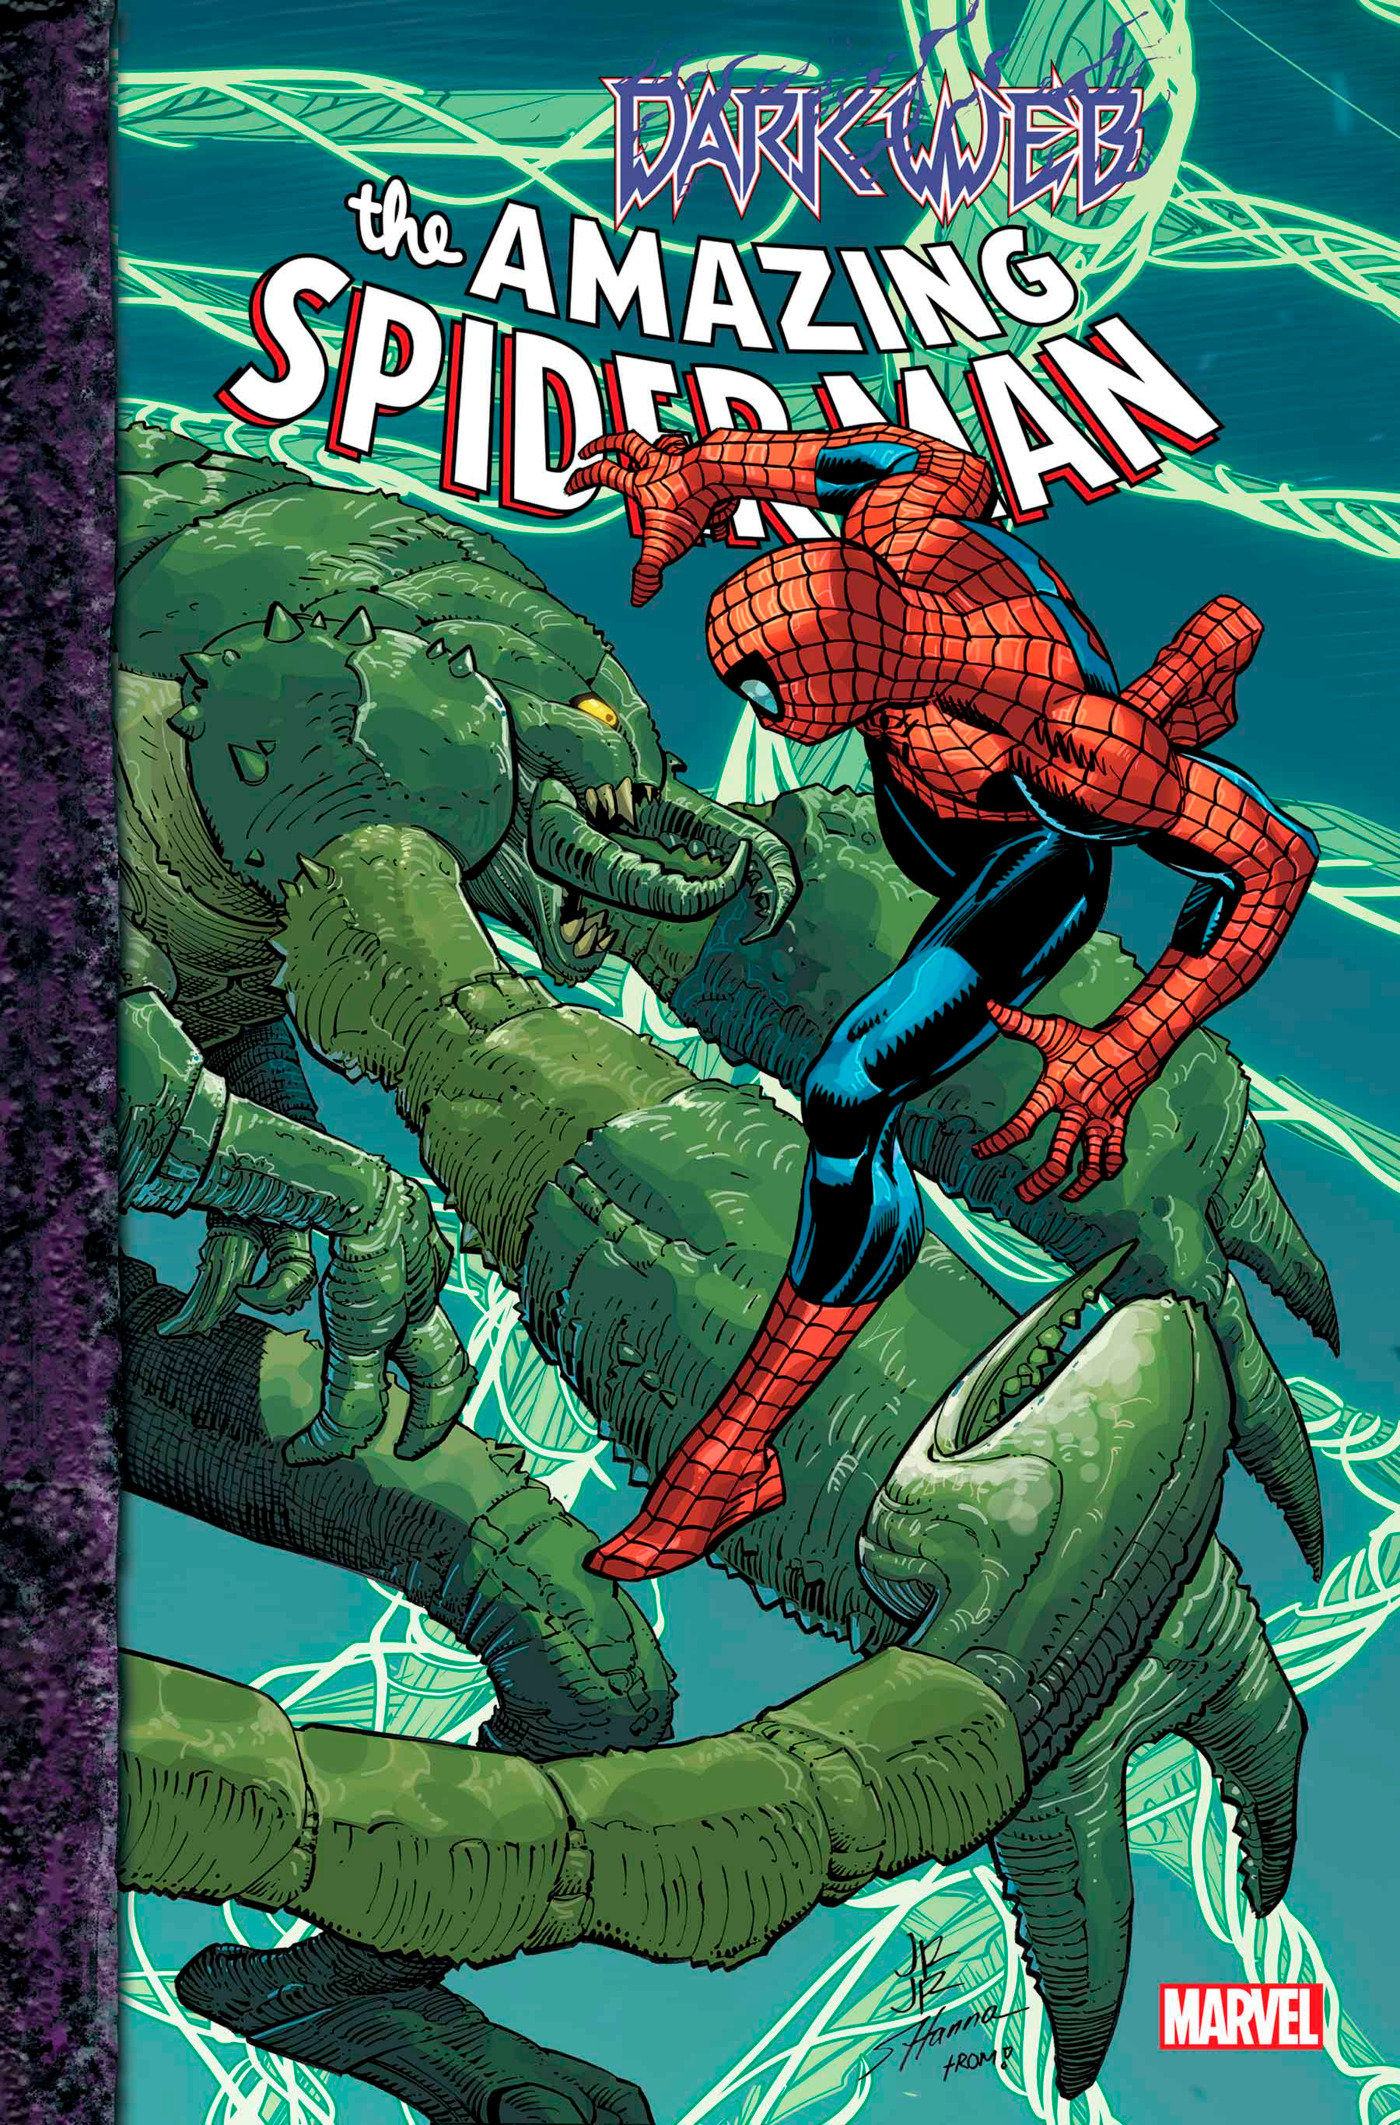 Amazing Spider-Man #18 [Dark Web]